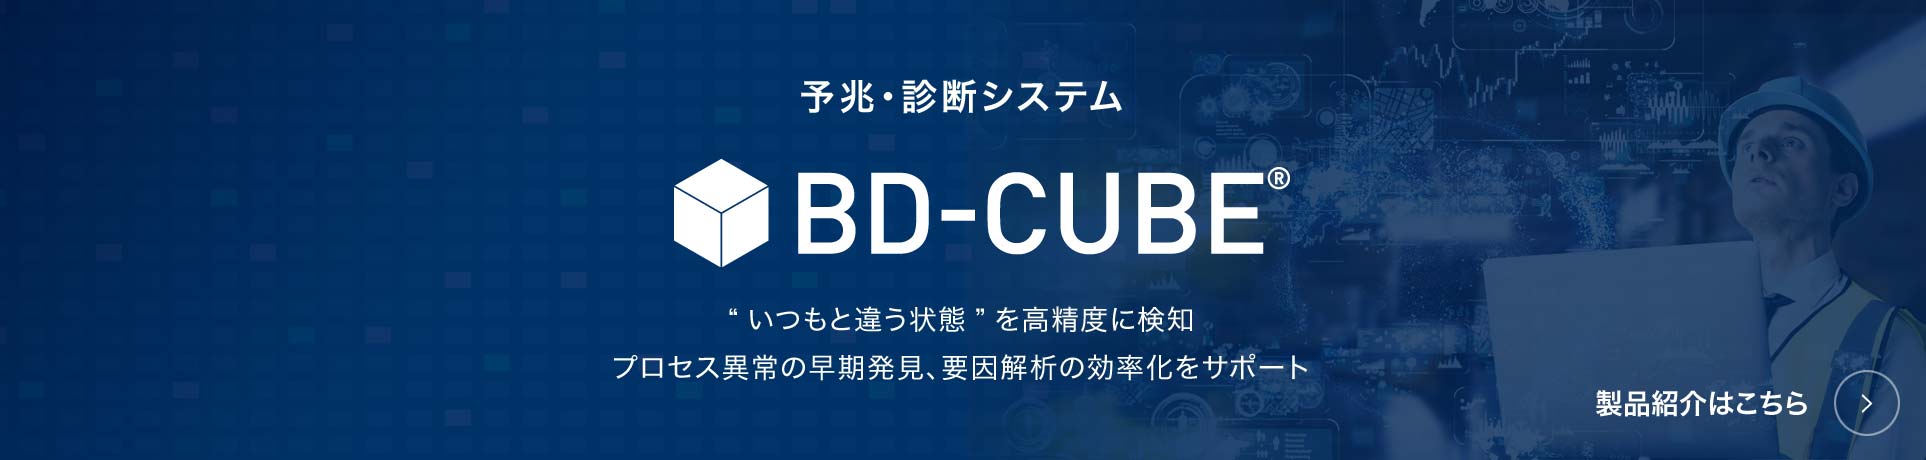 bd-cube 製品紹介